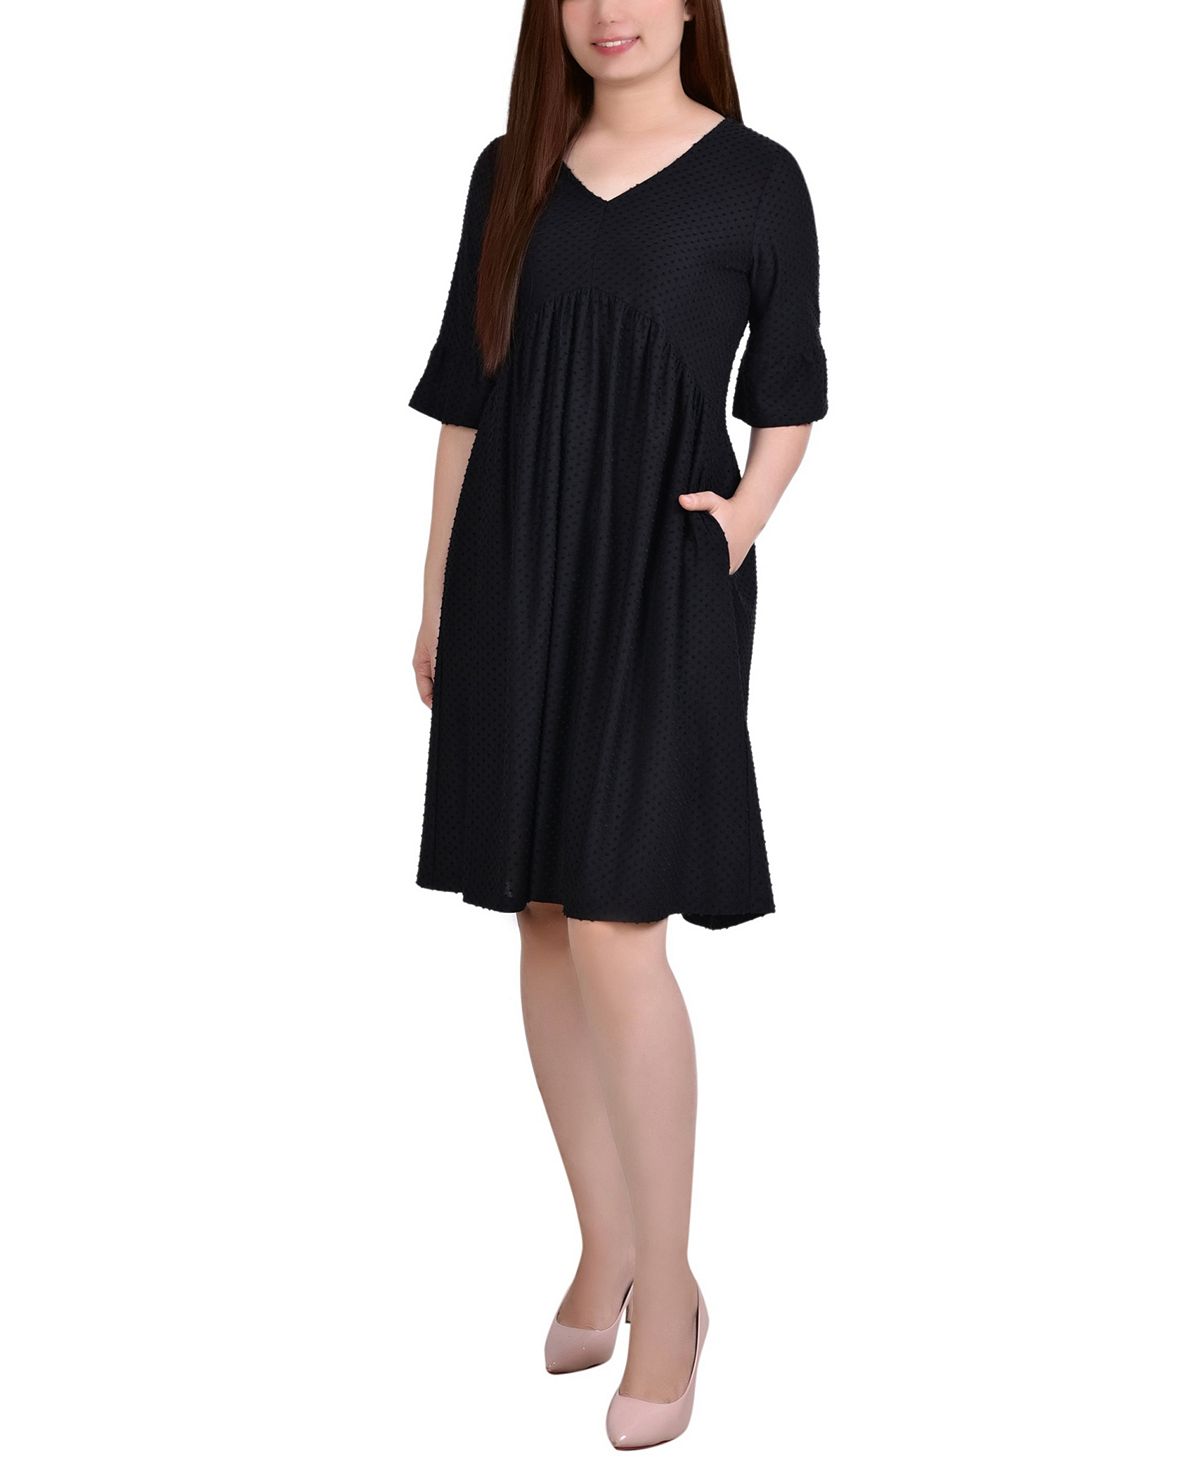 Миниатюрное платье swiss dot в горошек с рукавами до локтя NY Collection, черный